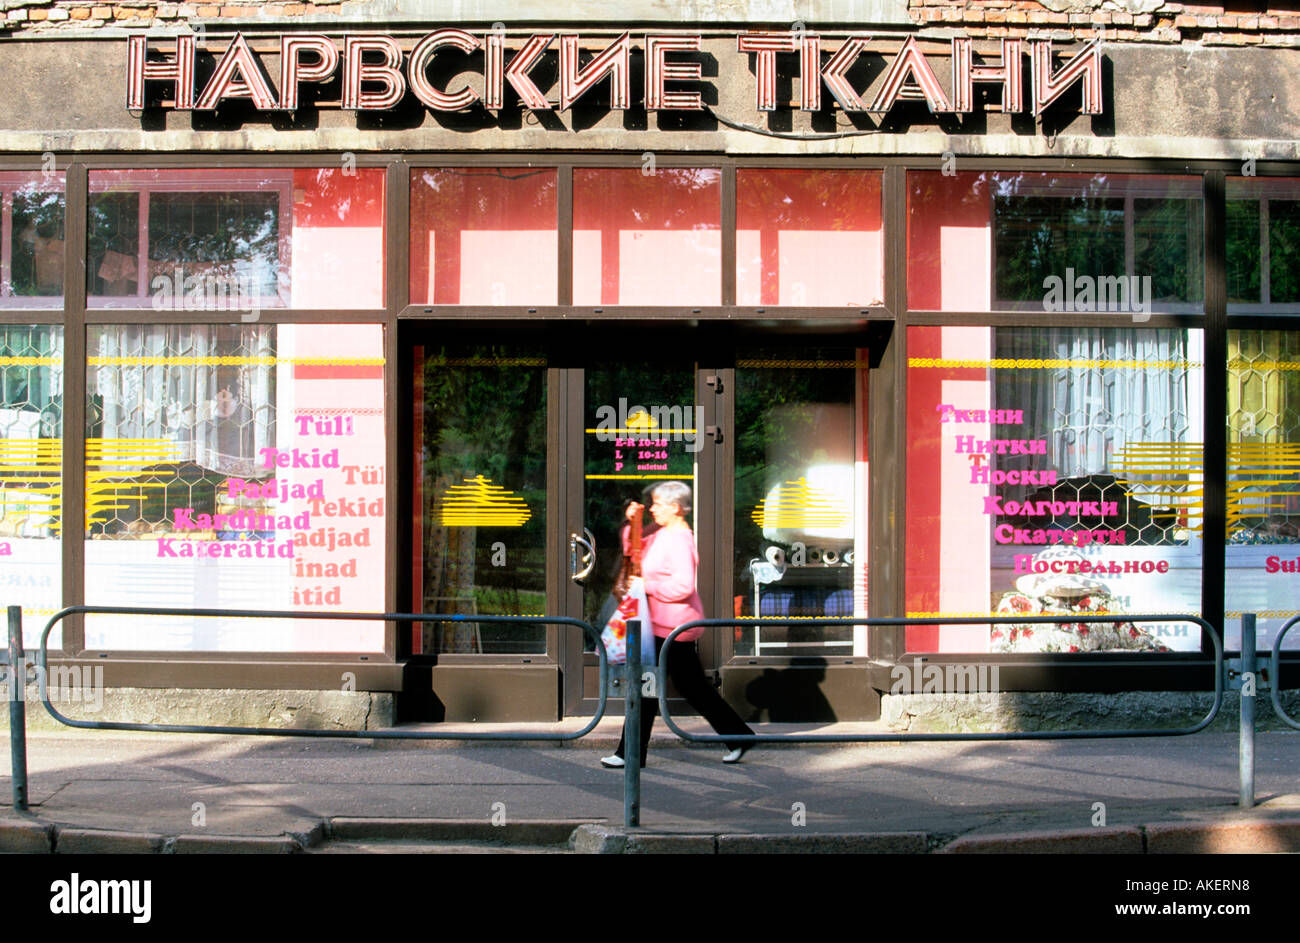 Estland, Narva (Narwa), Geschäft mit russischer Beschriftung in der Hauptstrasse Pushkini Stock Photo